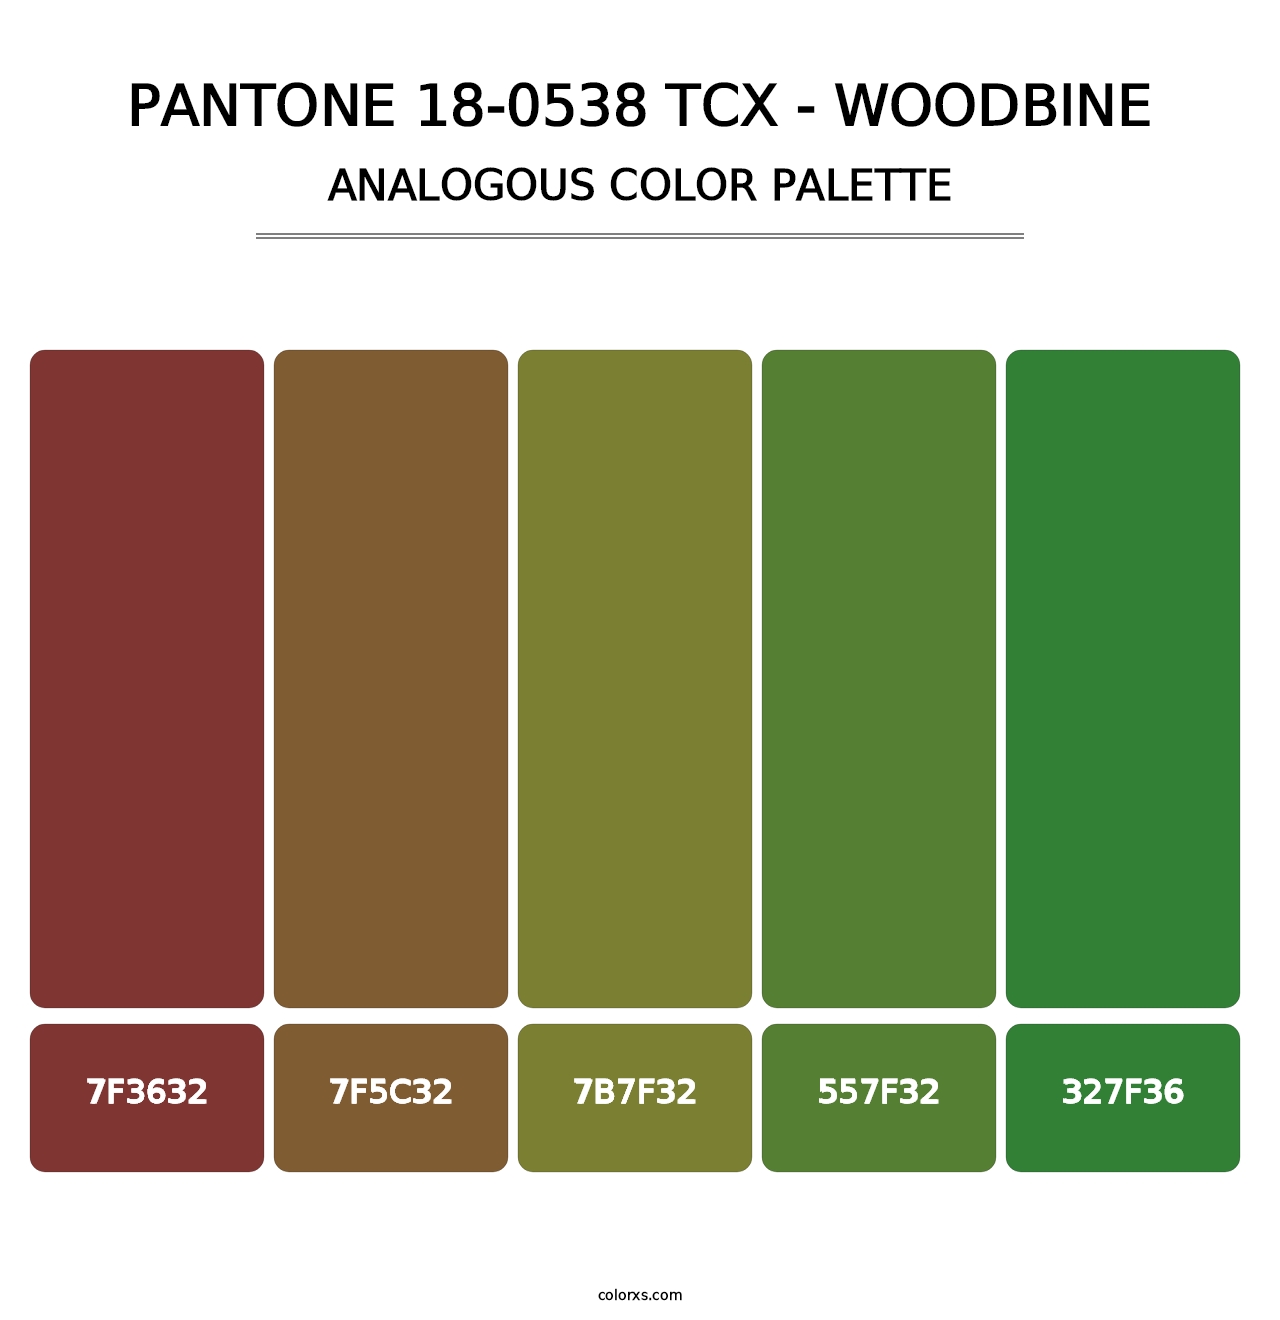 PANTONE 18-0538 TCX - Woodbine - Analogous Color Palette